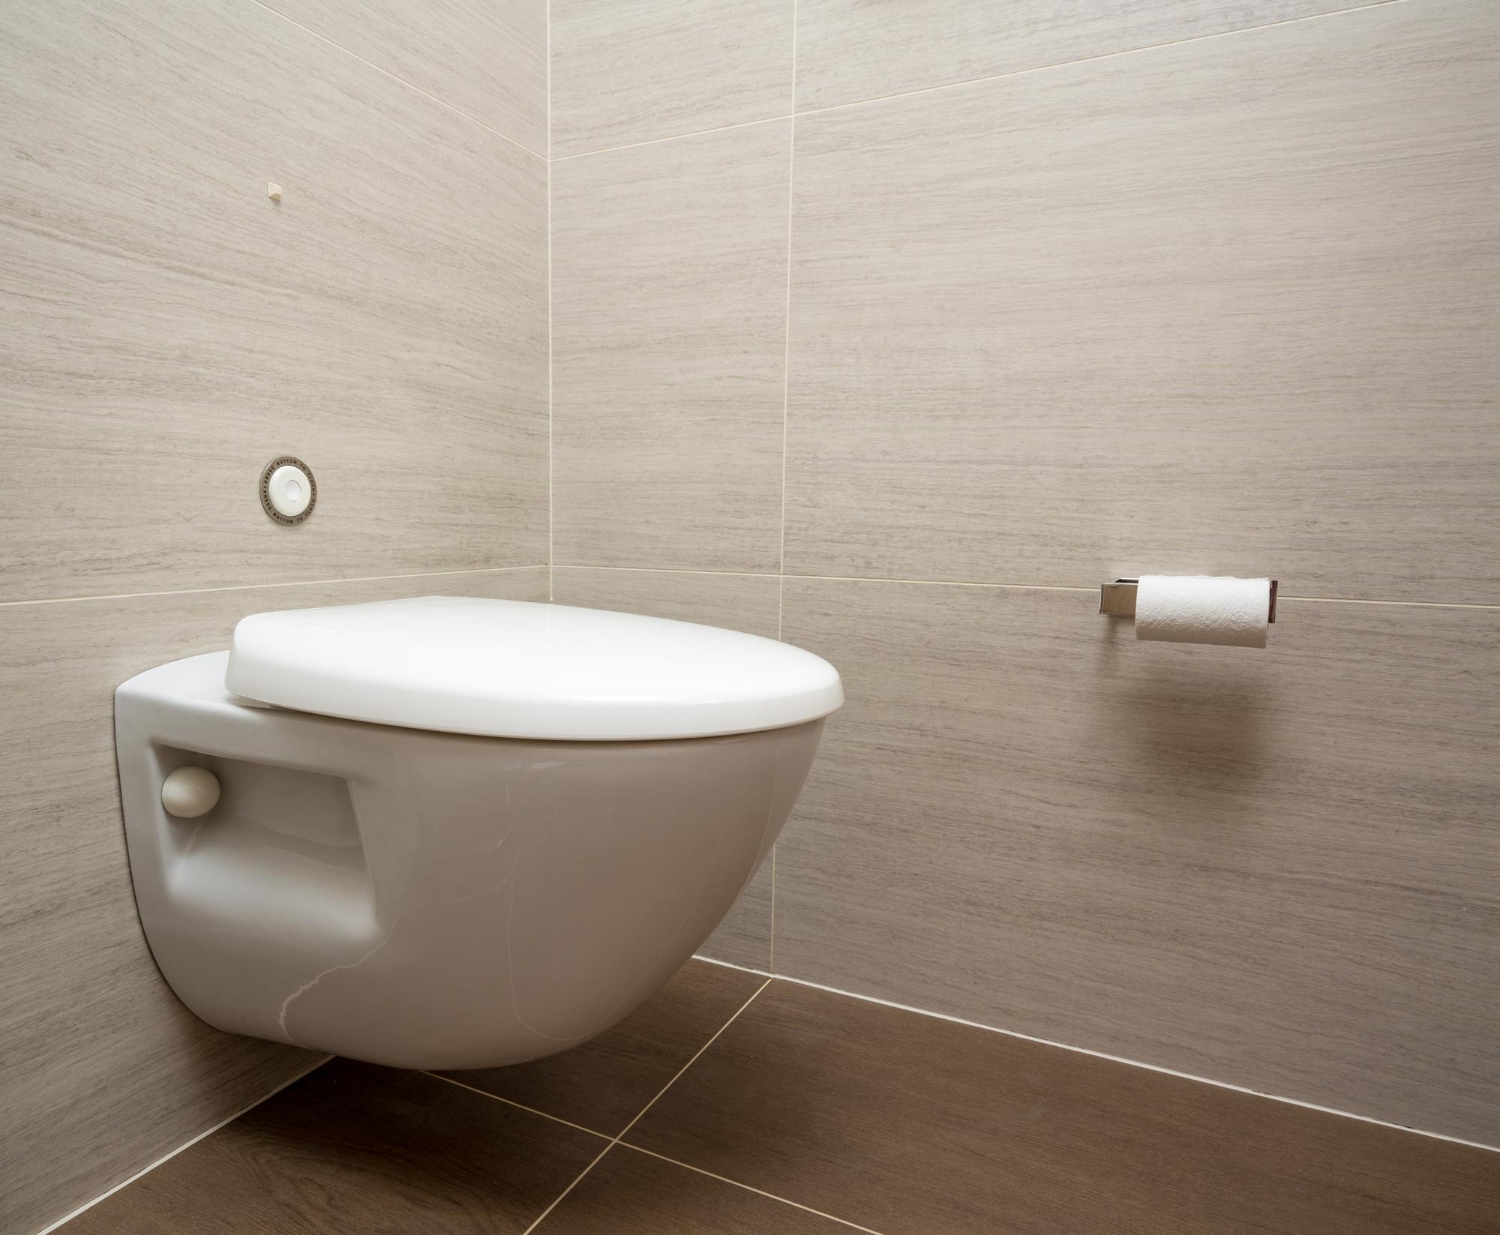 Optimalkan penggunaan area kamar mandi dengan toilet gantung.